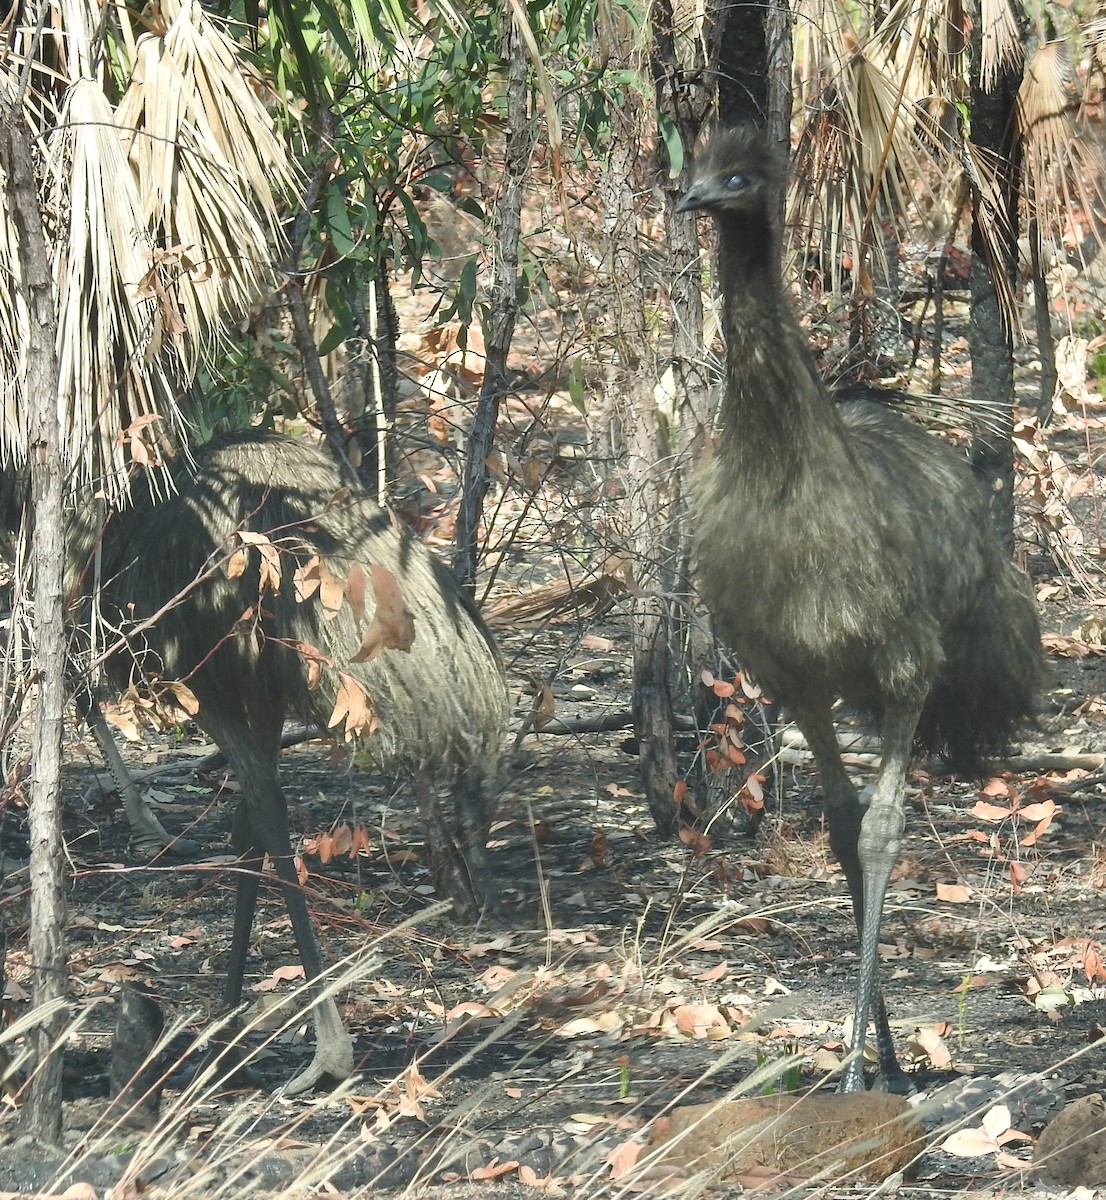 Emu - Colin Trainor